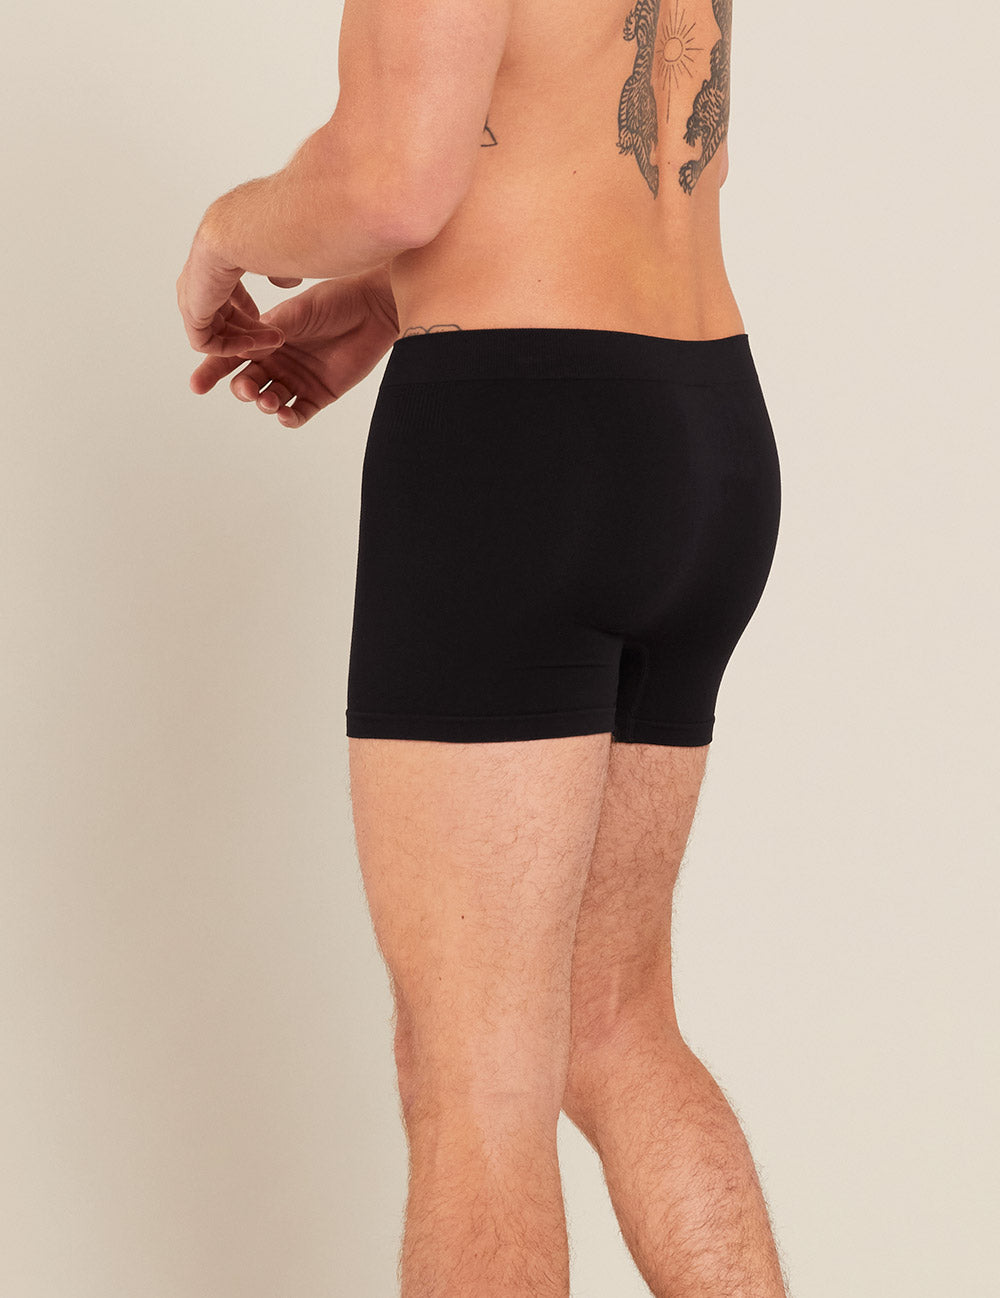 Simplmasygenix Men's Comfort Soft Boxer Brifts Underwear Steel Ring  Hollowed Out Men's Solid T-pants Low Waist Large Bag Bound Leg Belt Double  T-pants